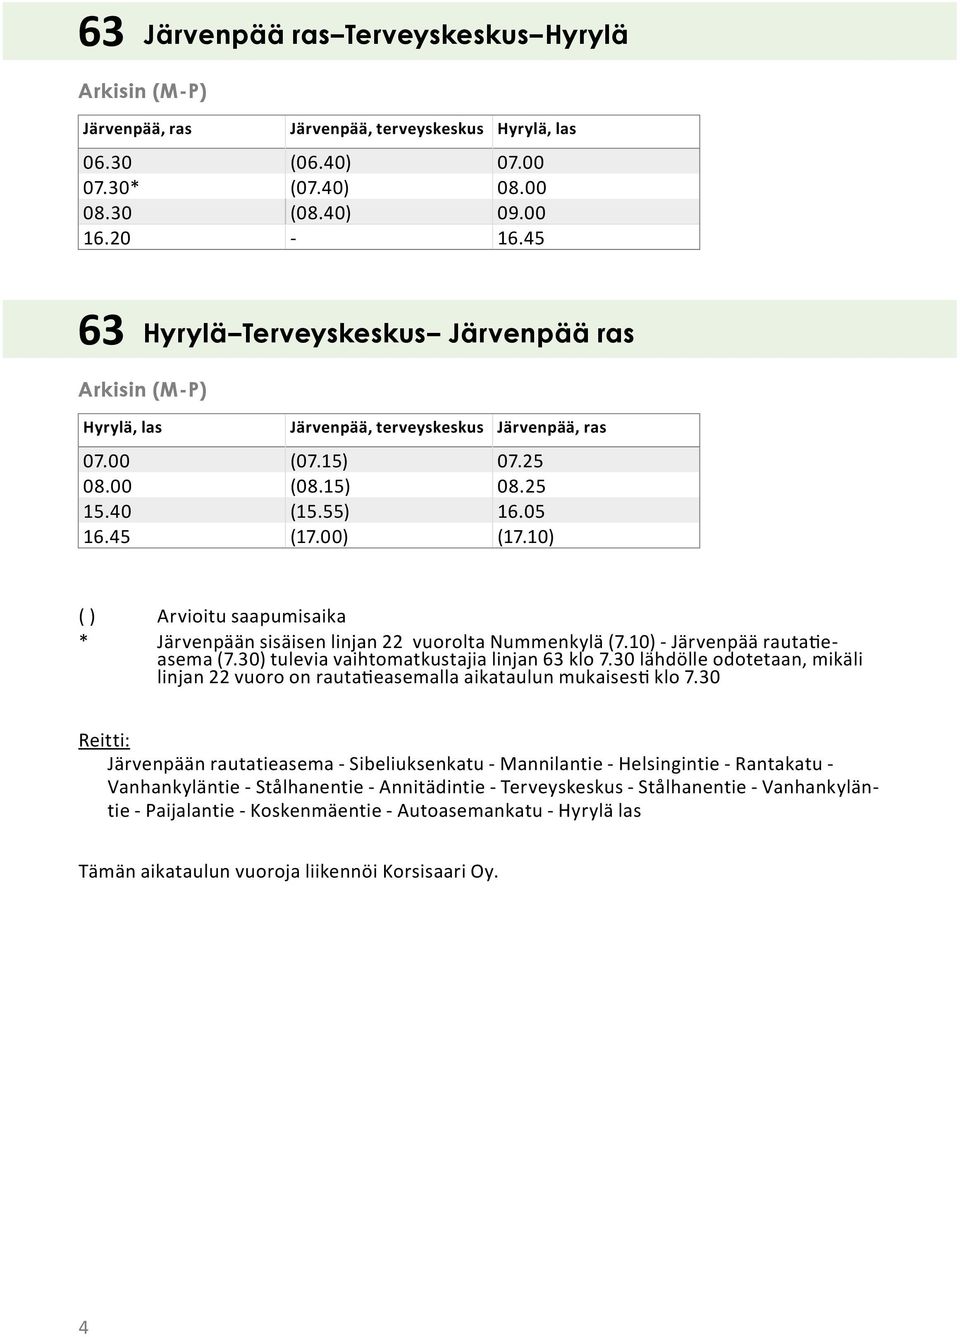 10) ( ) Arvioitu saapumisaika * Järvenpään sisäisen linjan 22 vuorolta Nummenkylä (7.10) - Järvenpää rauta easema (7.30) tulevia vaihtomatkustajia linjan 63 klo 7.